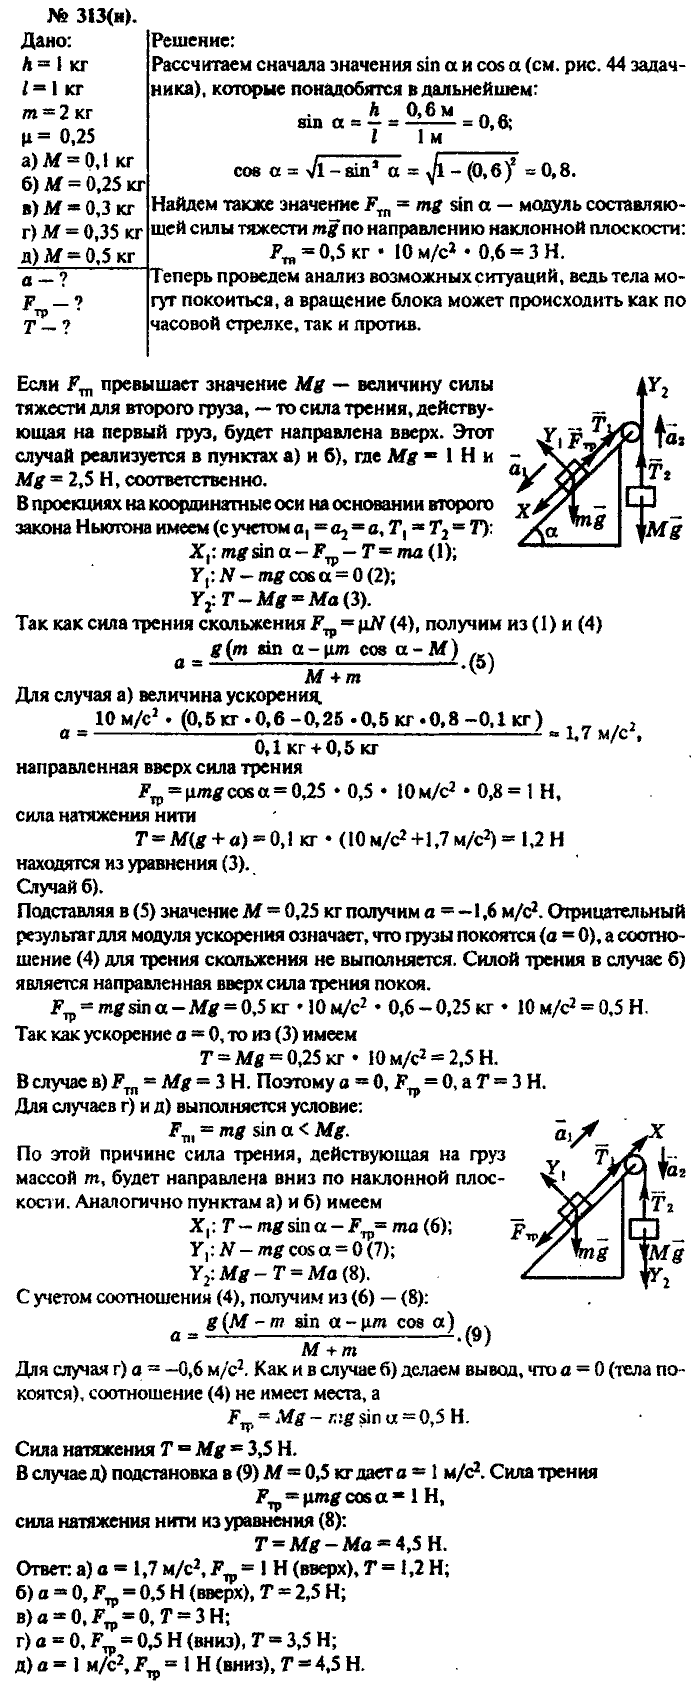 Задачник, 11 класс, Рымкевич, 2001-2013, задача: 313(н)